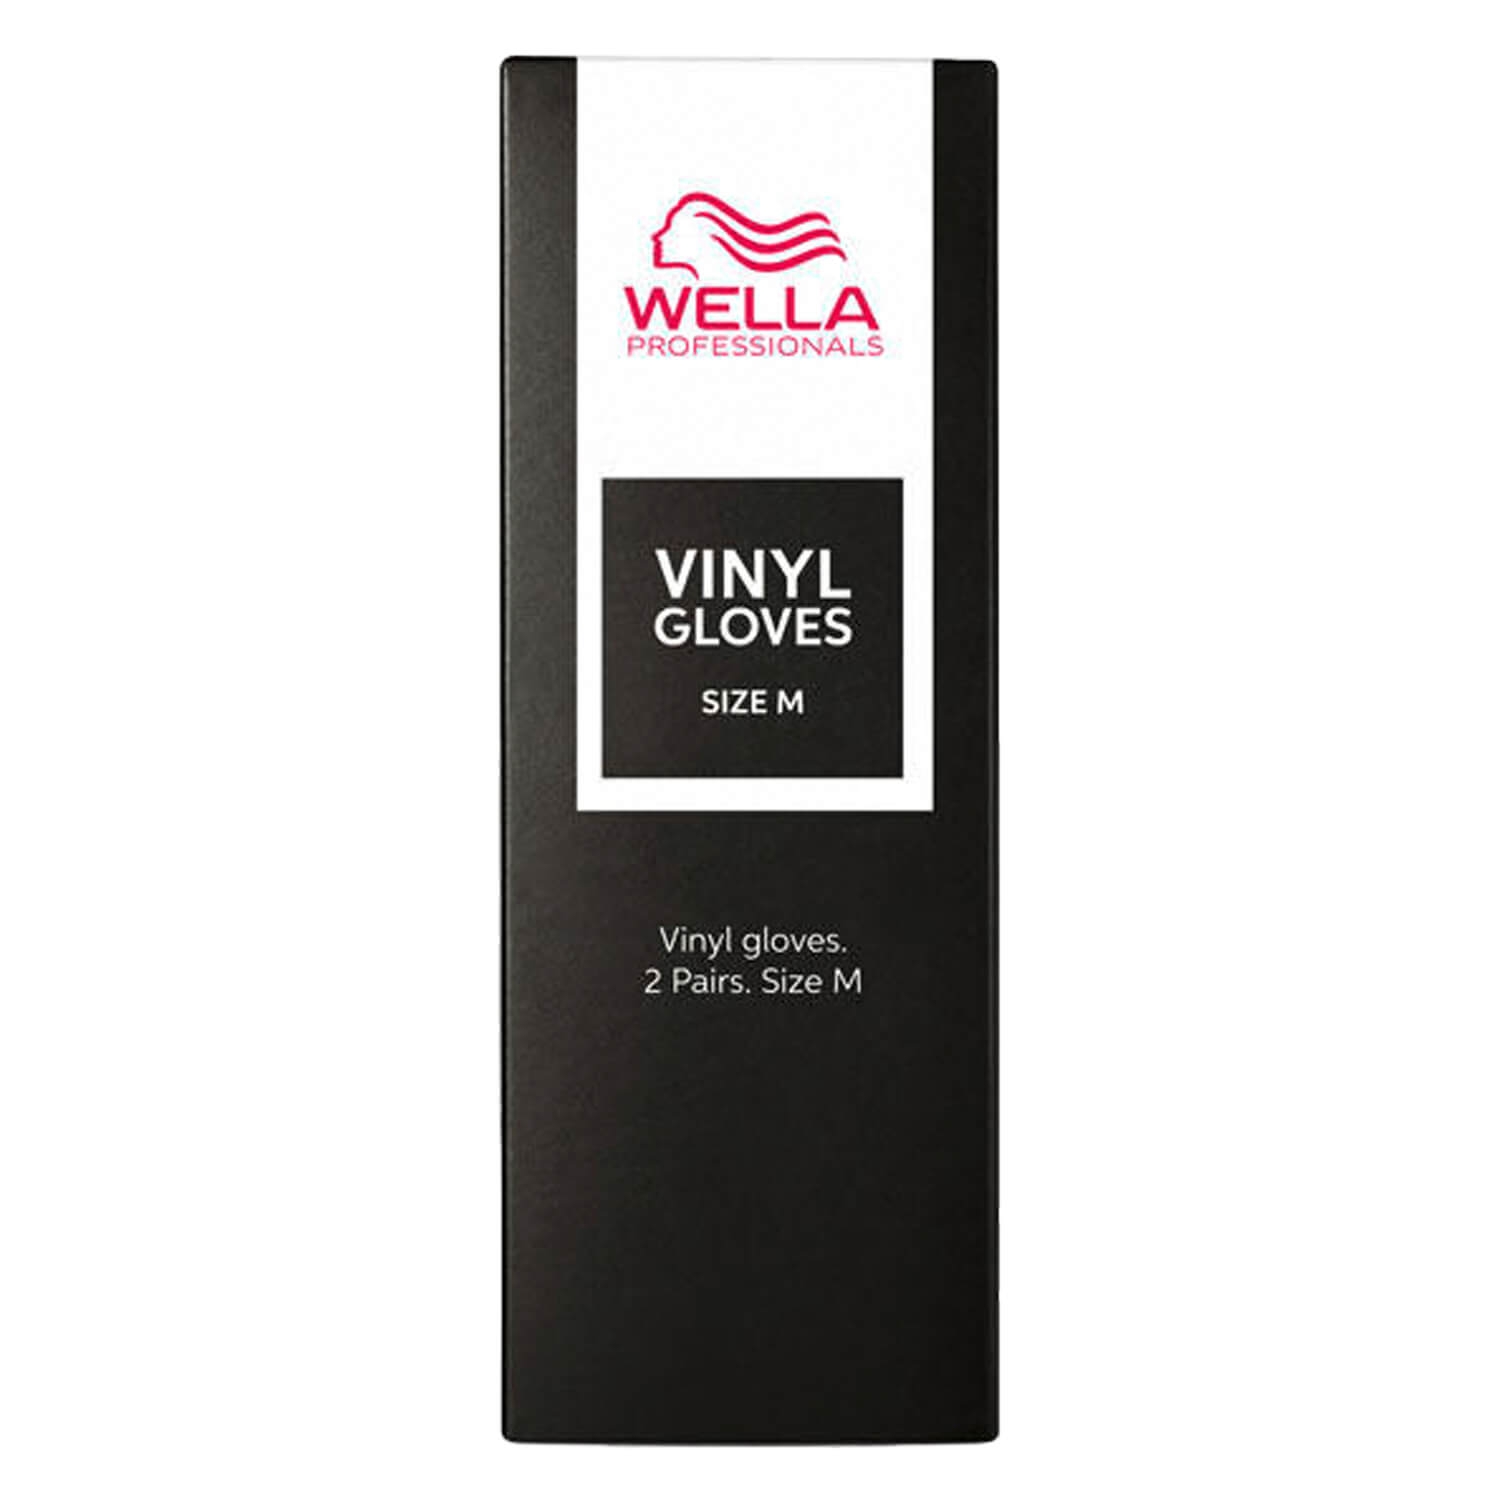 Produktbild von Wella Tools - Vinyl Schutzhandschuhe